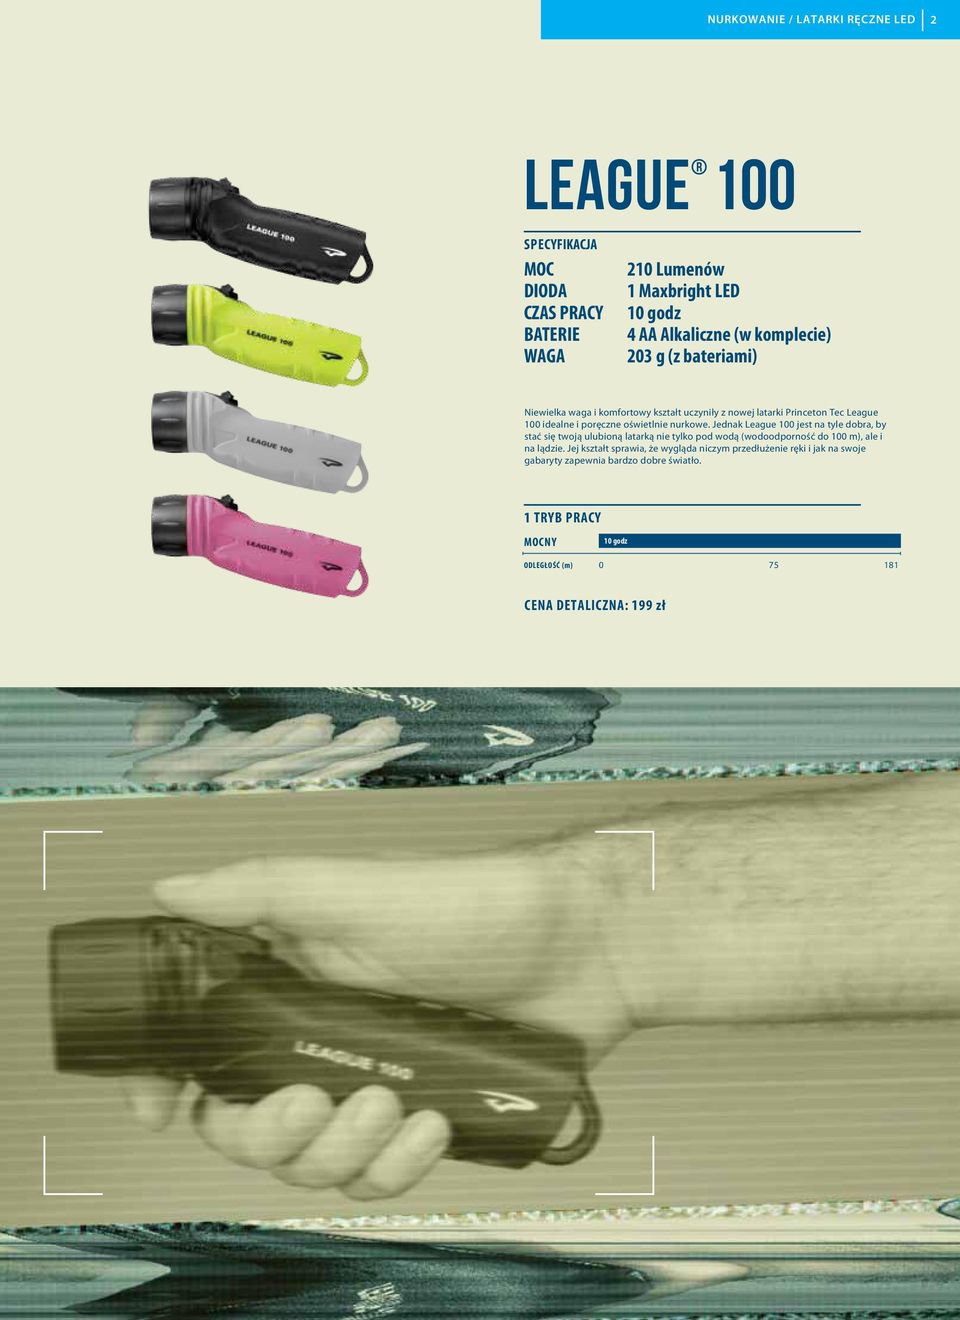 Jednak League 100 jest na tyle dobra, by stać się twoją ulubioną latarką nie tylko pod wodą (wodoodporność do 100 m), ale i na lądzie.